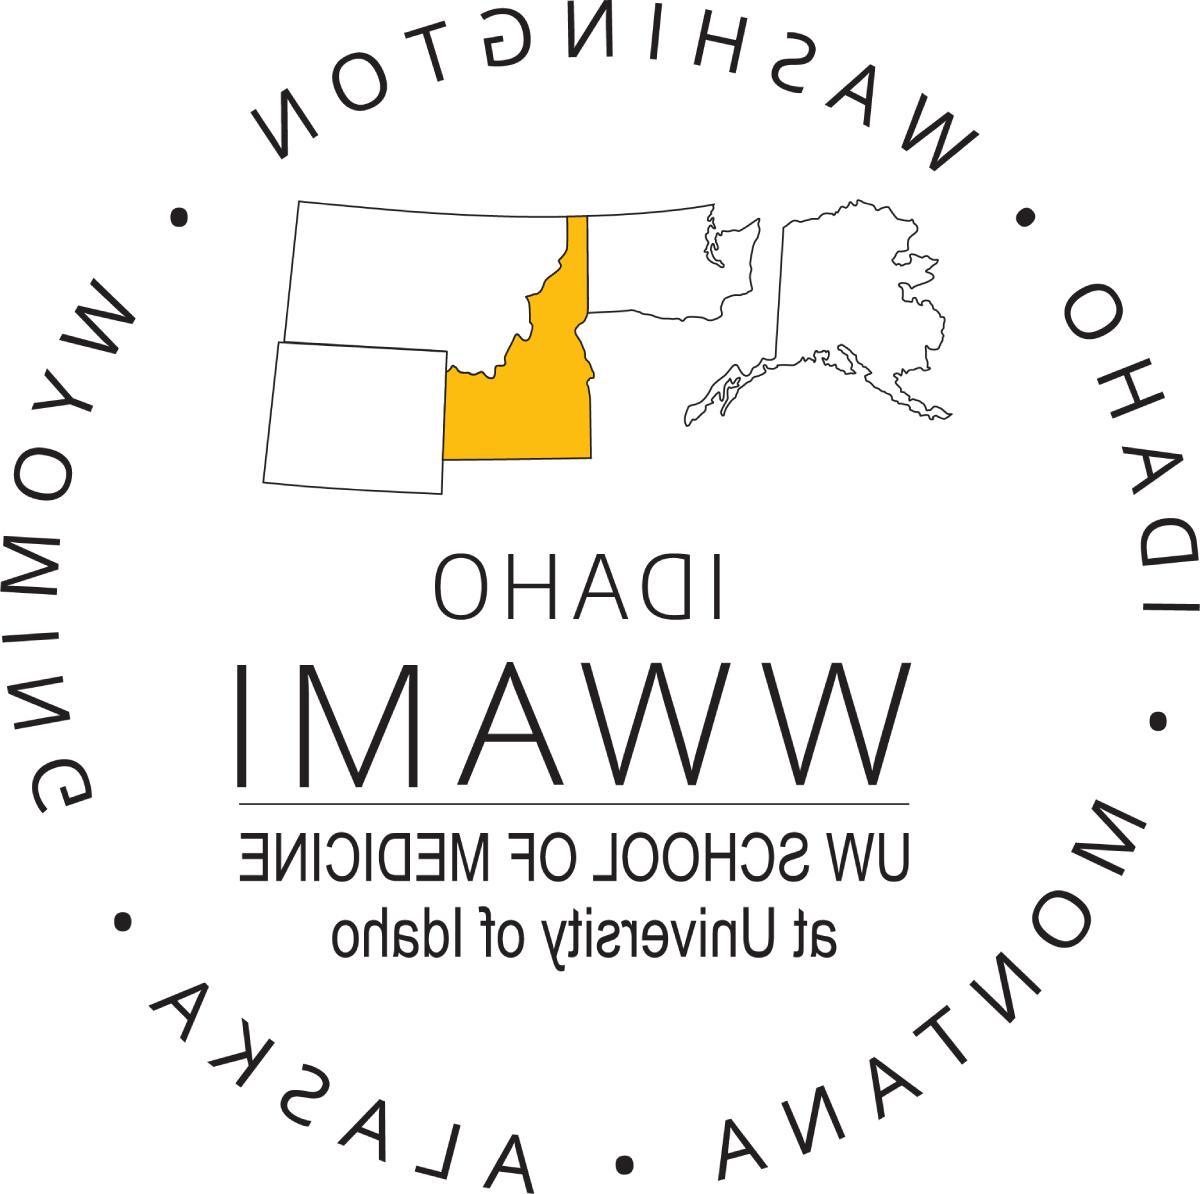 Idaho WWAMI logo